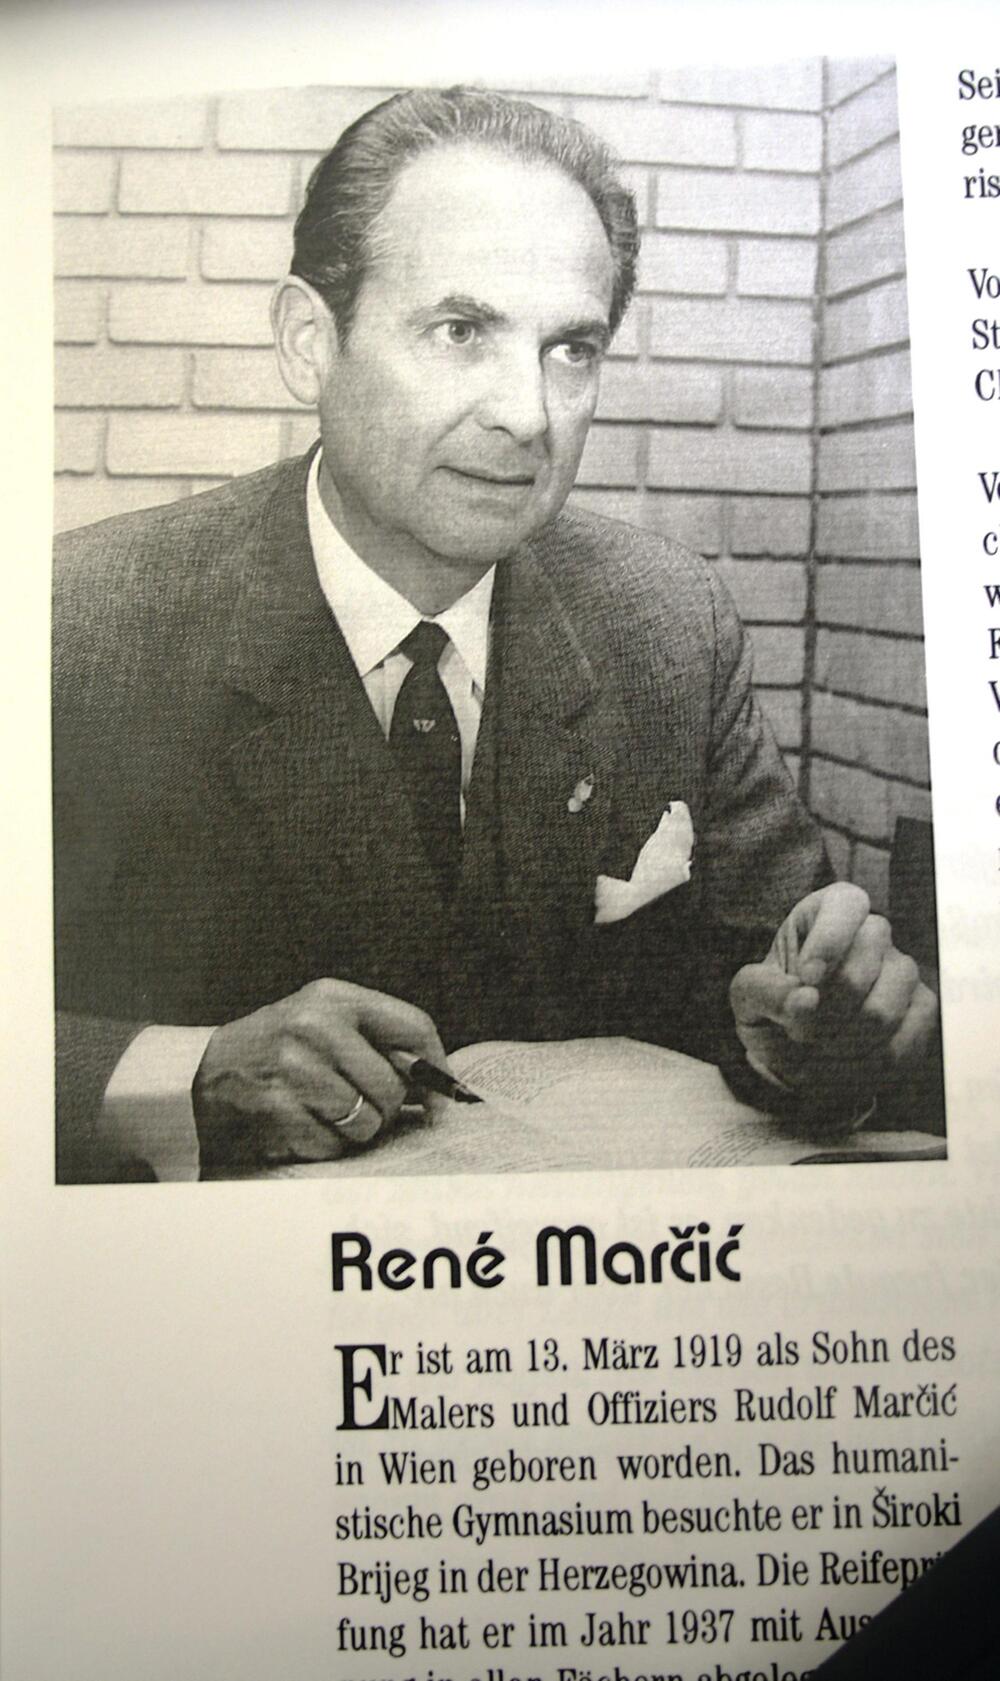 René Marcic